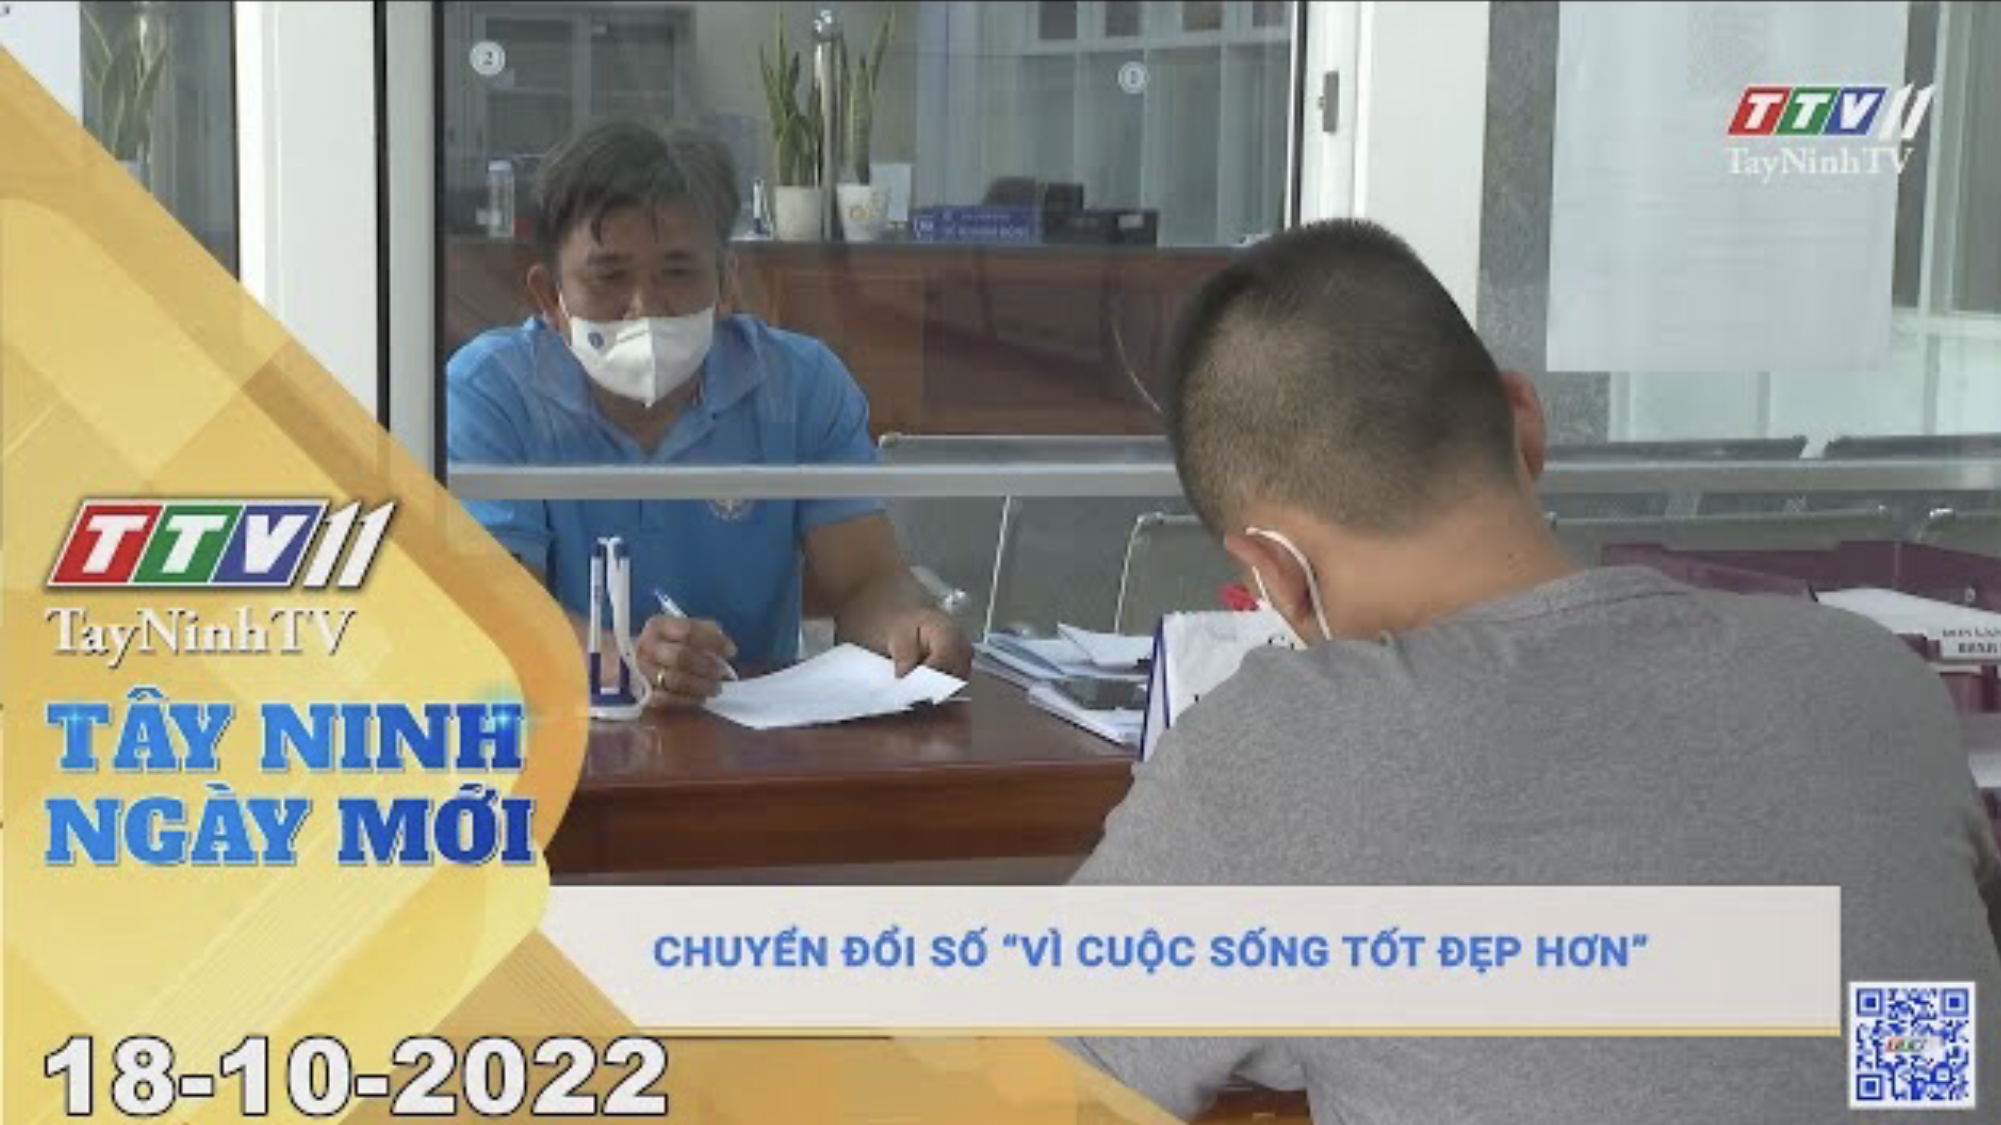 Tây Ninh ngày mới 18-10-2022 | Tin tức hôm nay | TayNinhTV